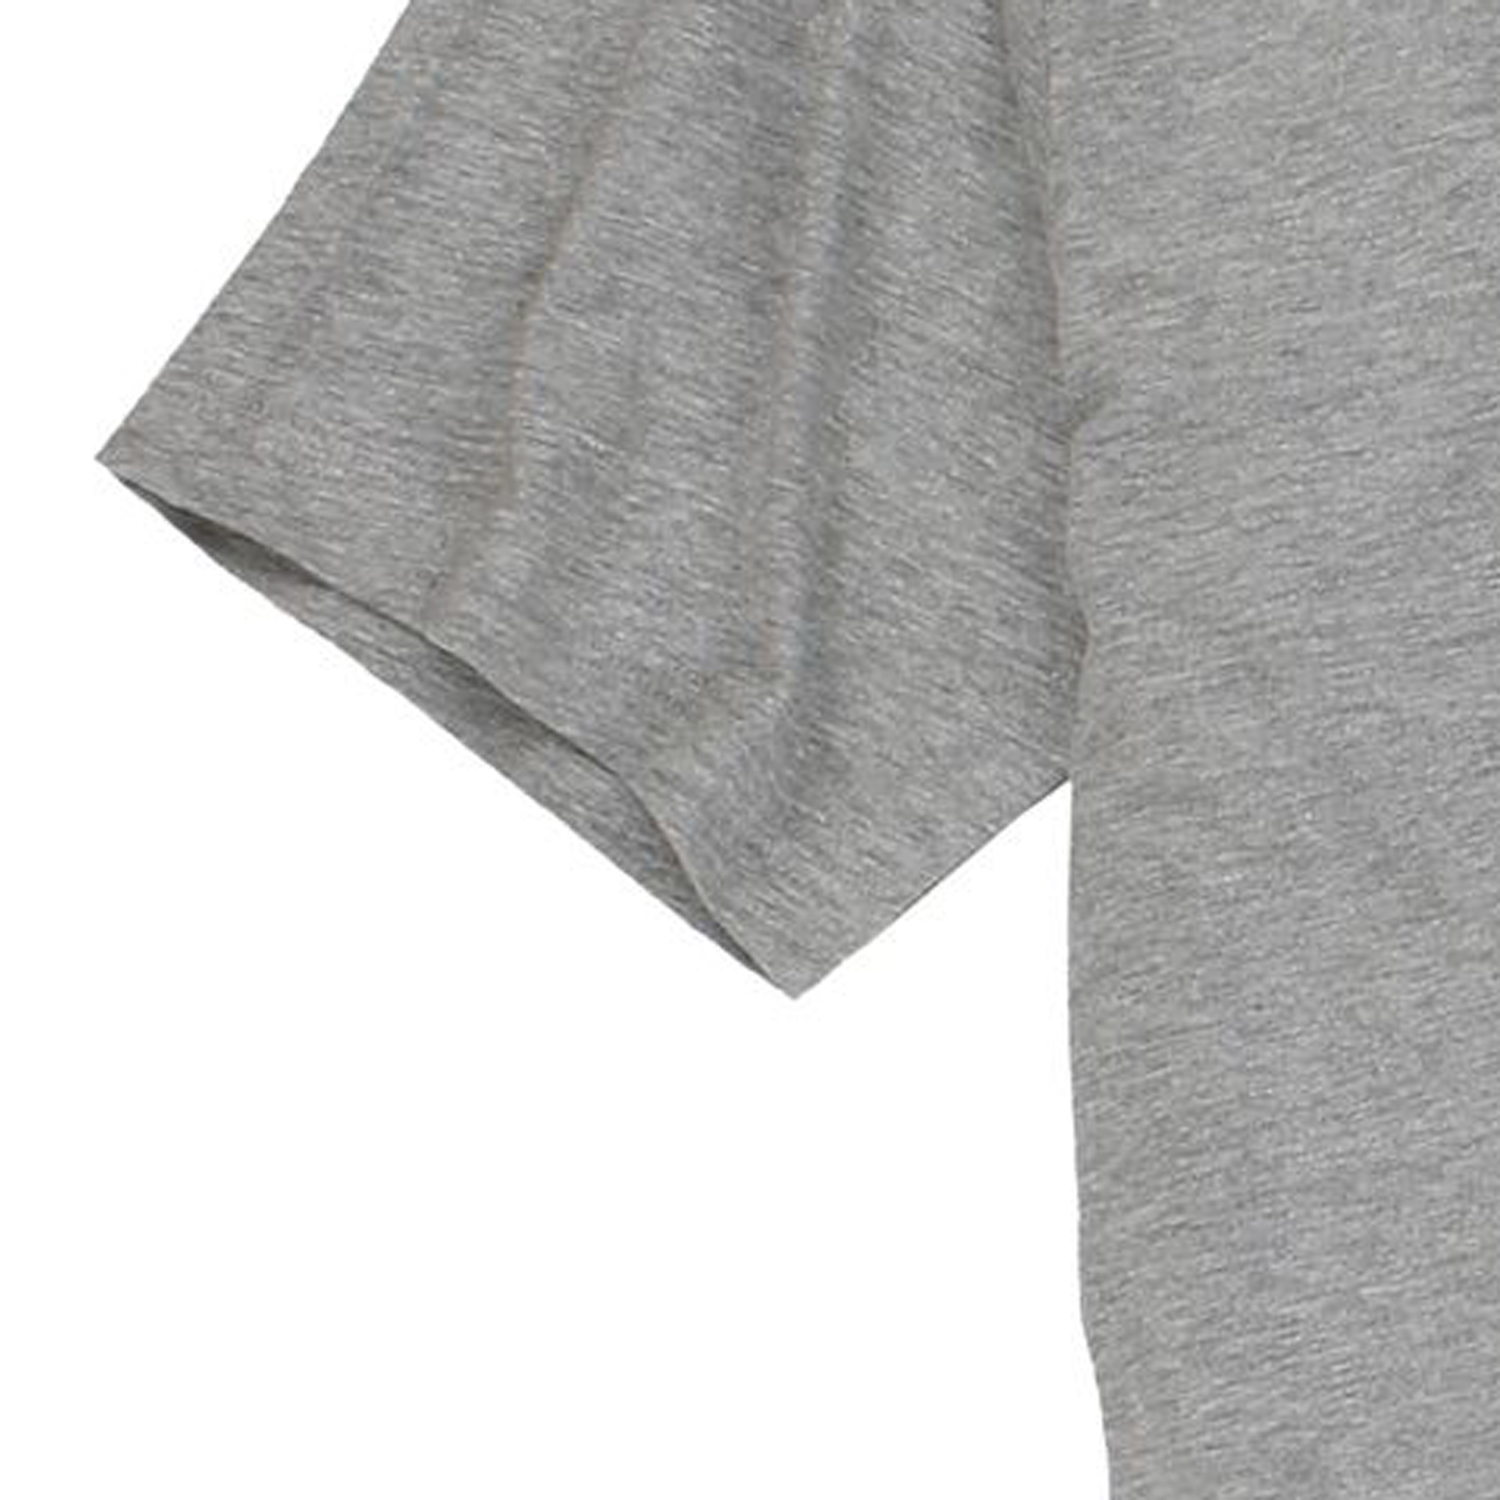 Hellgraues kurzarm Shirt von Adamo "Authentic" in großen Größen bis 8XL